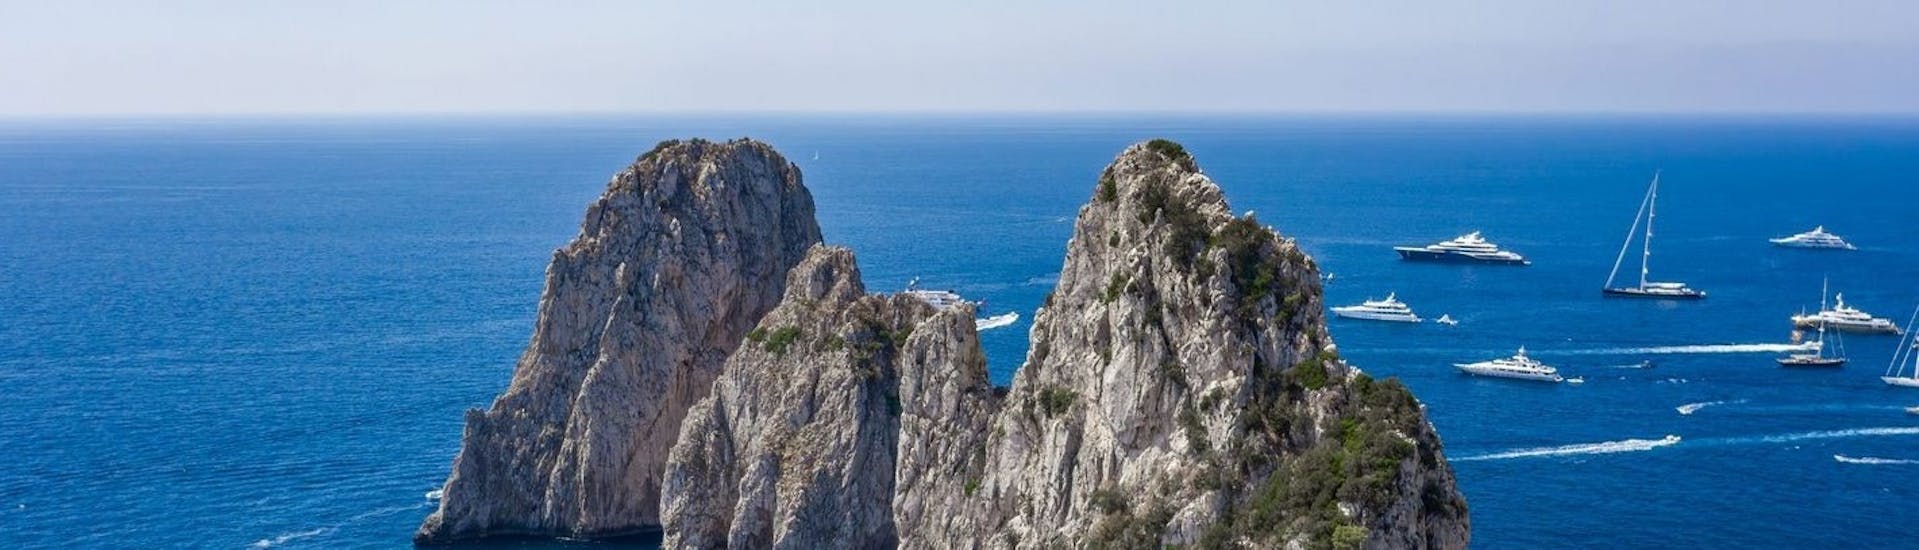 Vista dei Faraglioni di Capri che potrete ammirare durante il Giro in barca da Capri intorno all'isola e alla Grotta Azzurra.